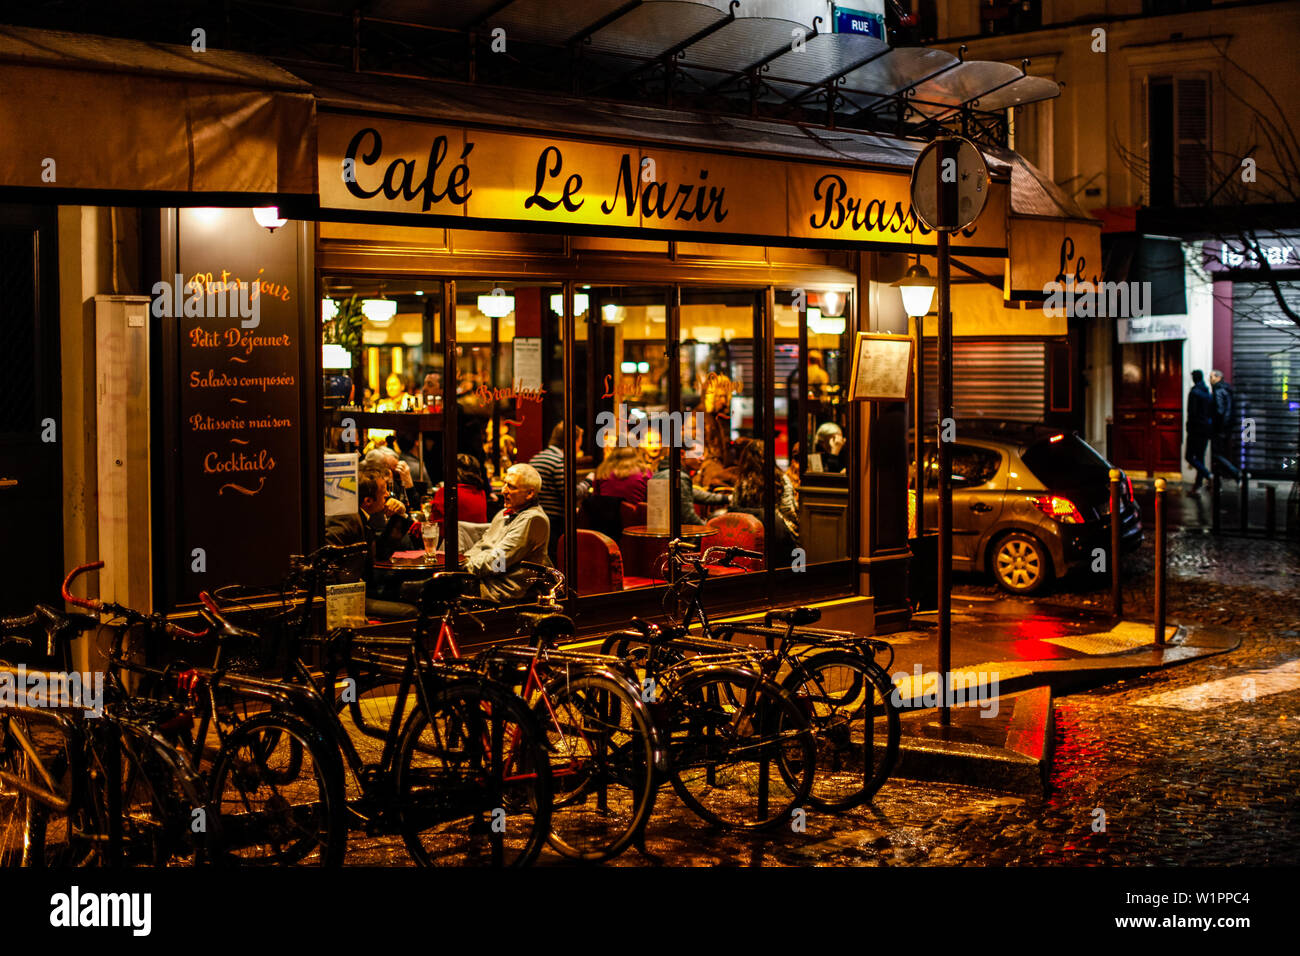 Brasserie cafe le nazir, 56 Rue des Abbesses, Montmartre, 75018 Paris, France, Europe Stock Photo